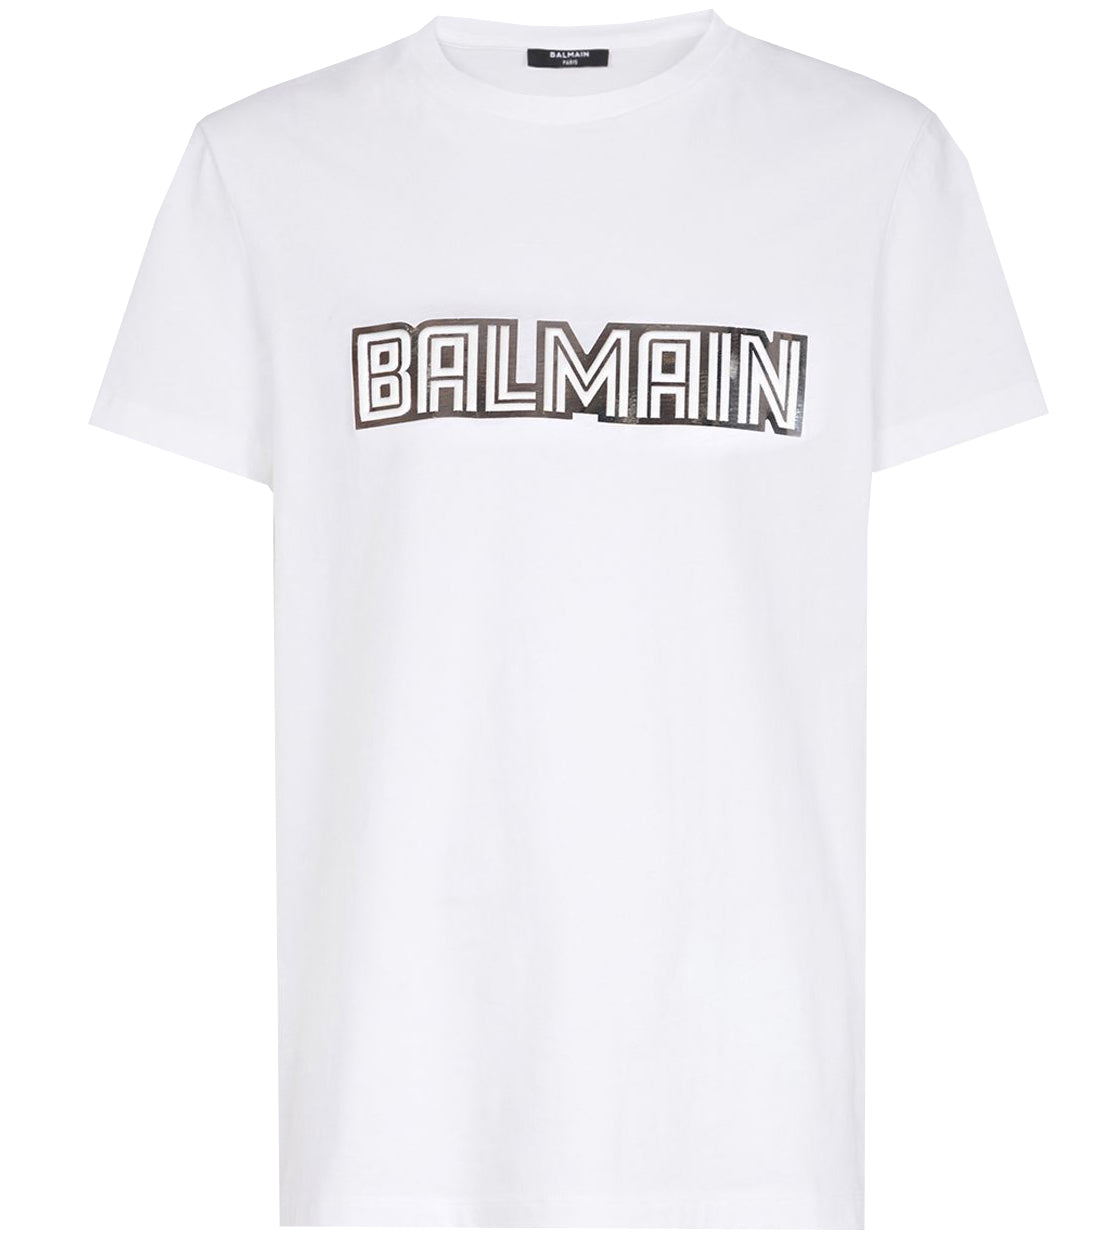 Metallic Balmain Embossed T-Shirt - White & Silver